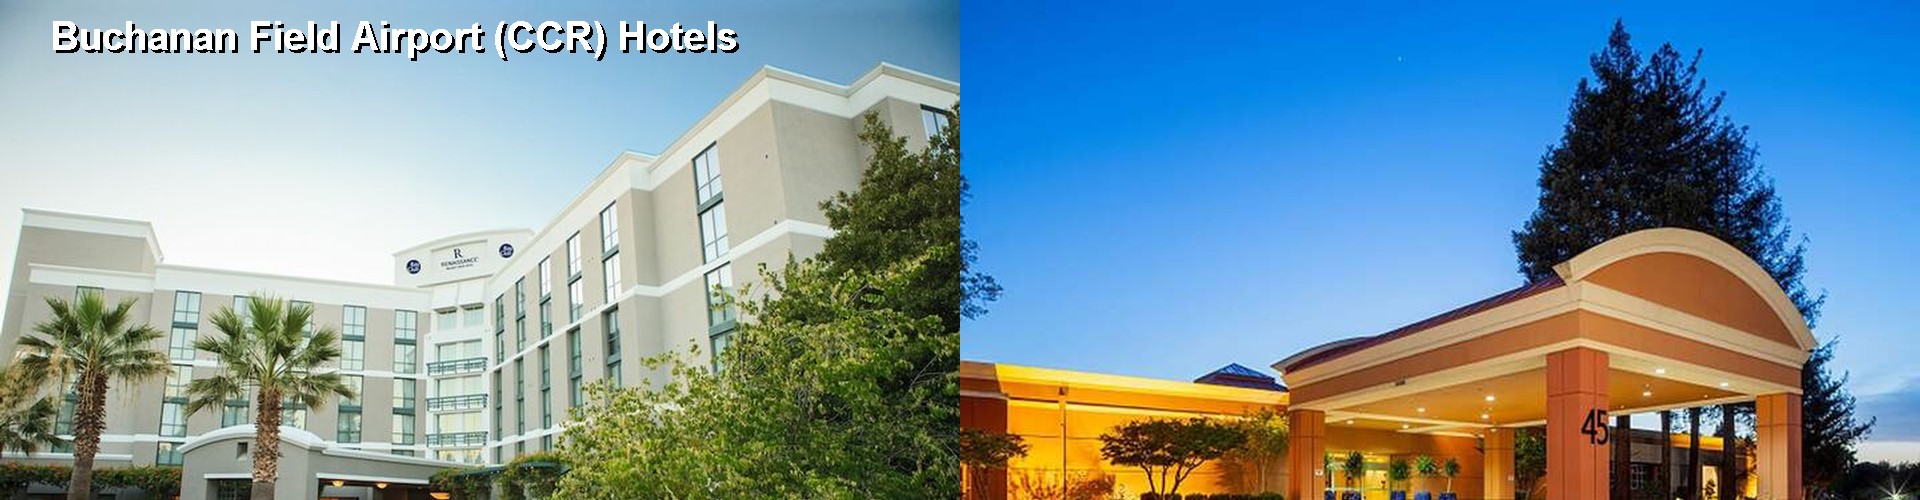 4 Best Hotels near Buchanan Field Airport (CCR)